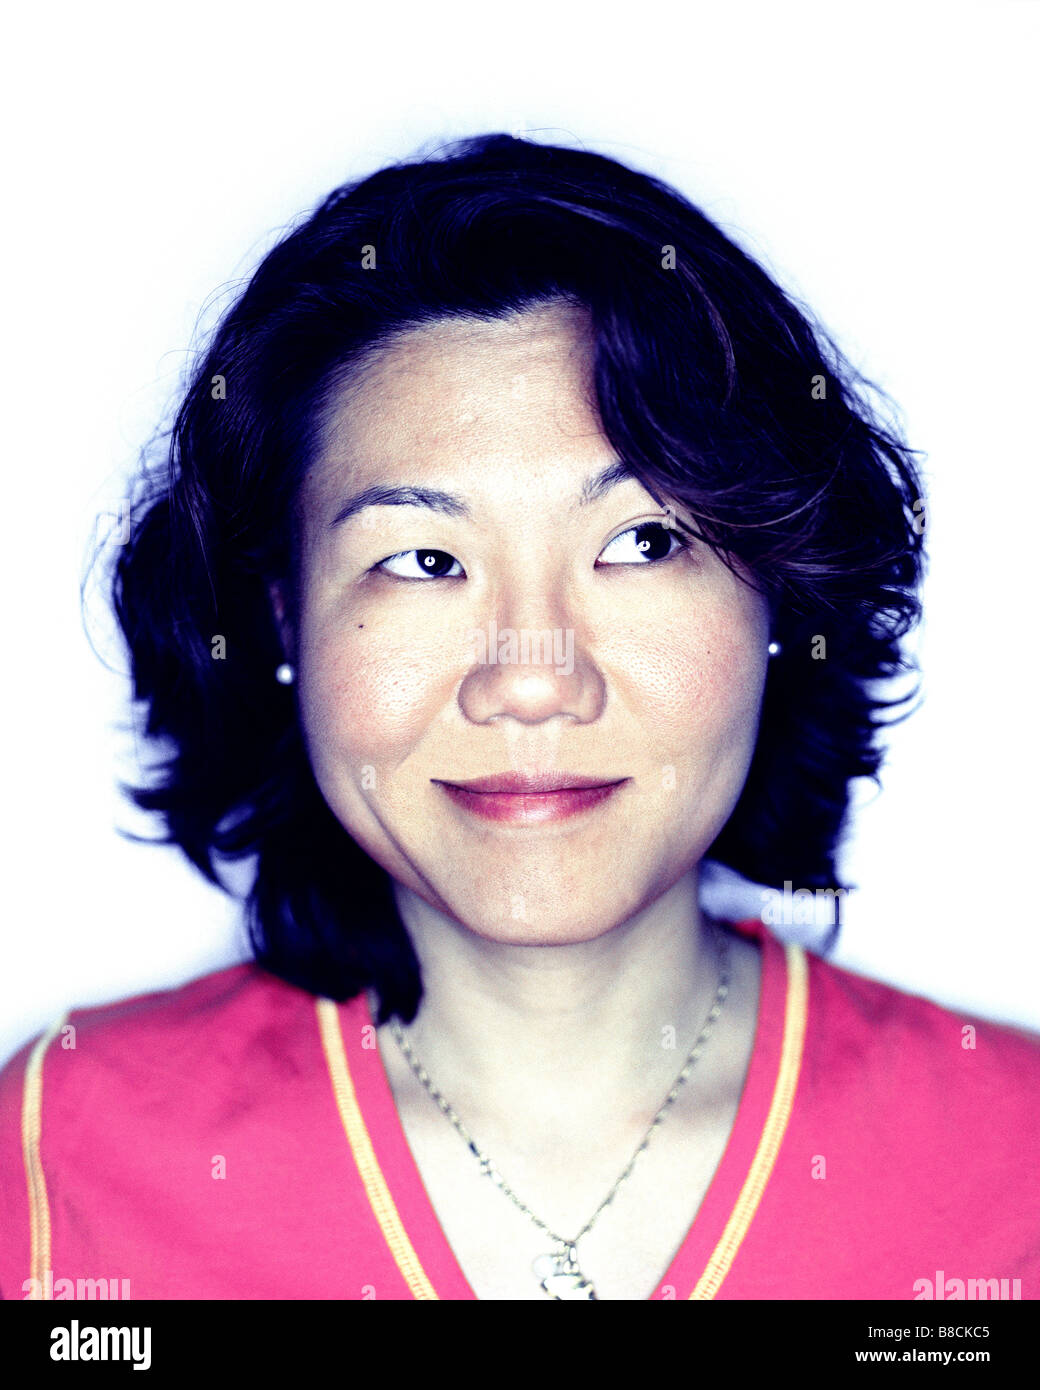 FL6353, Huy Lam ; Portrait, Asian Woman Looking à droite Banque D'Images